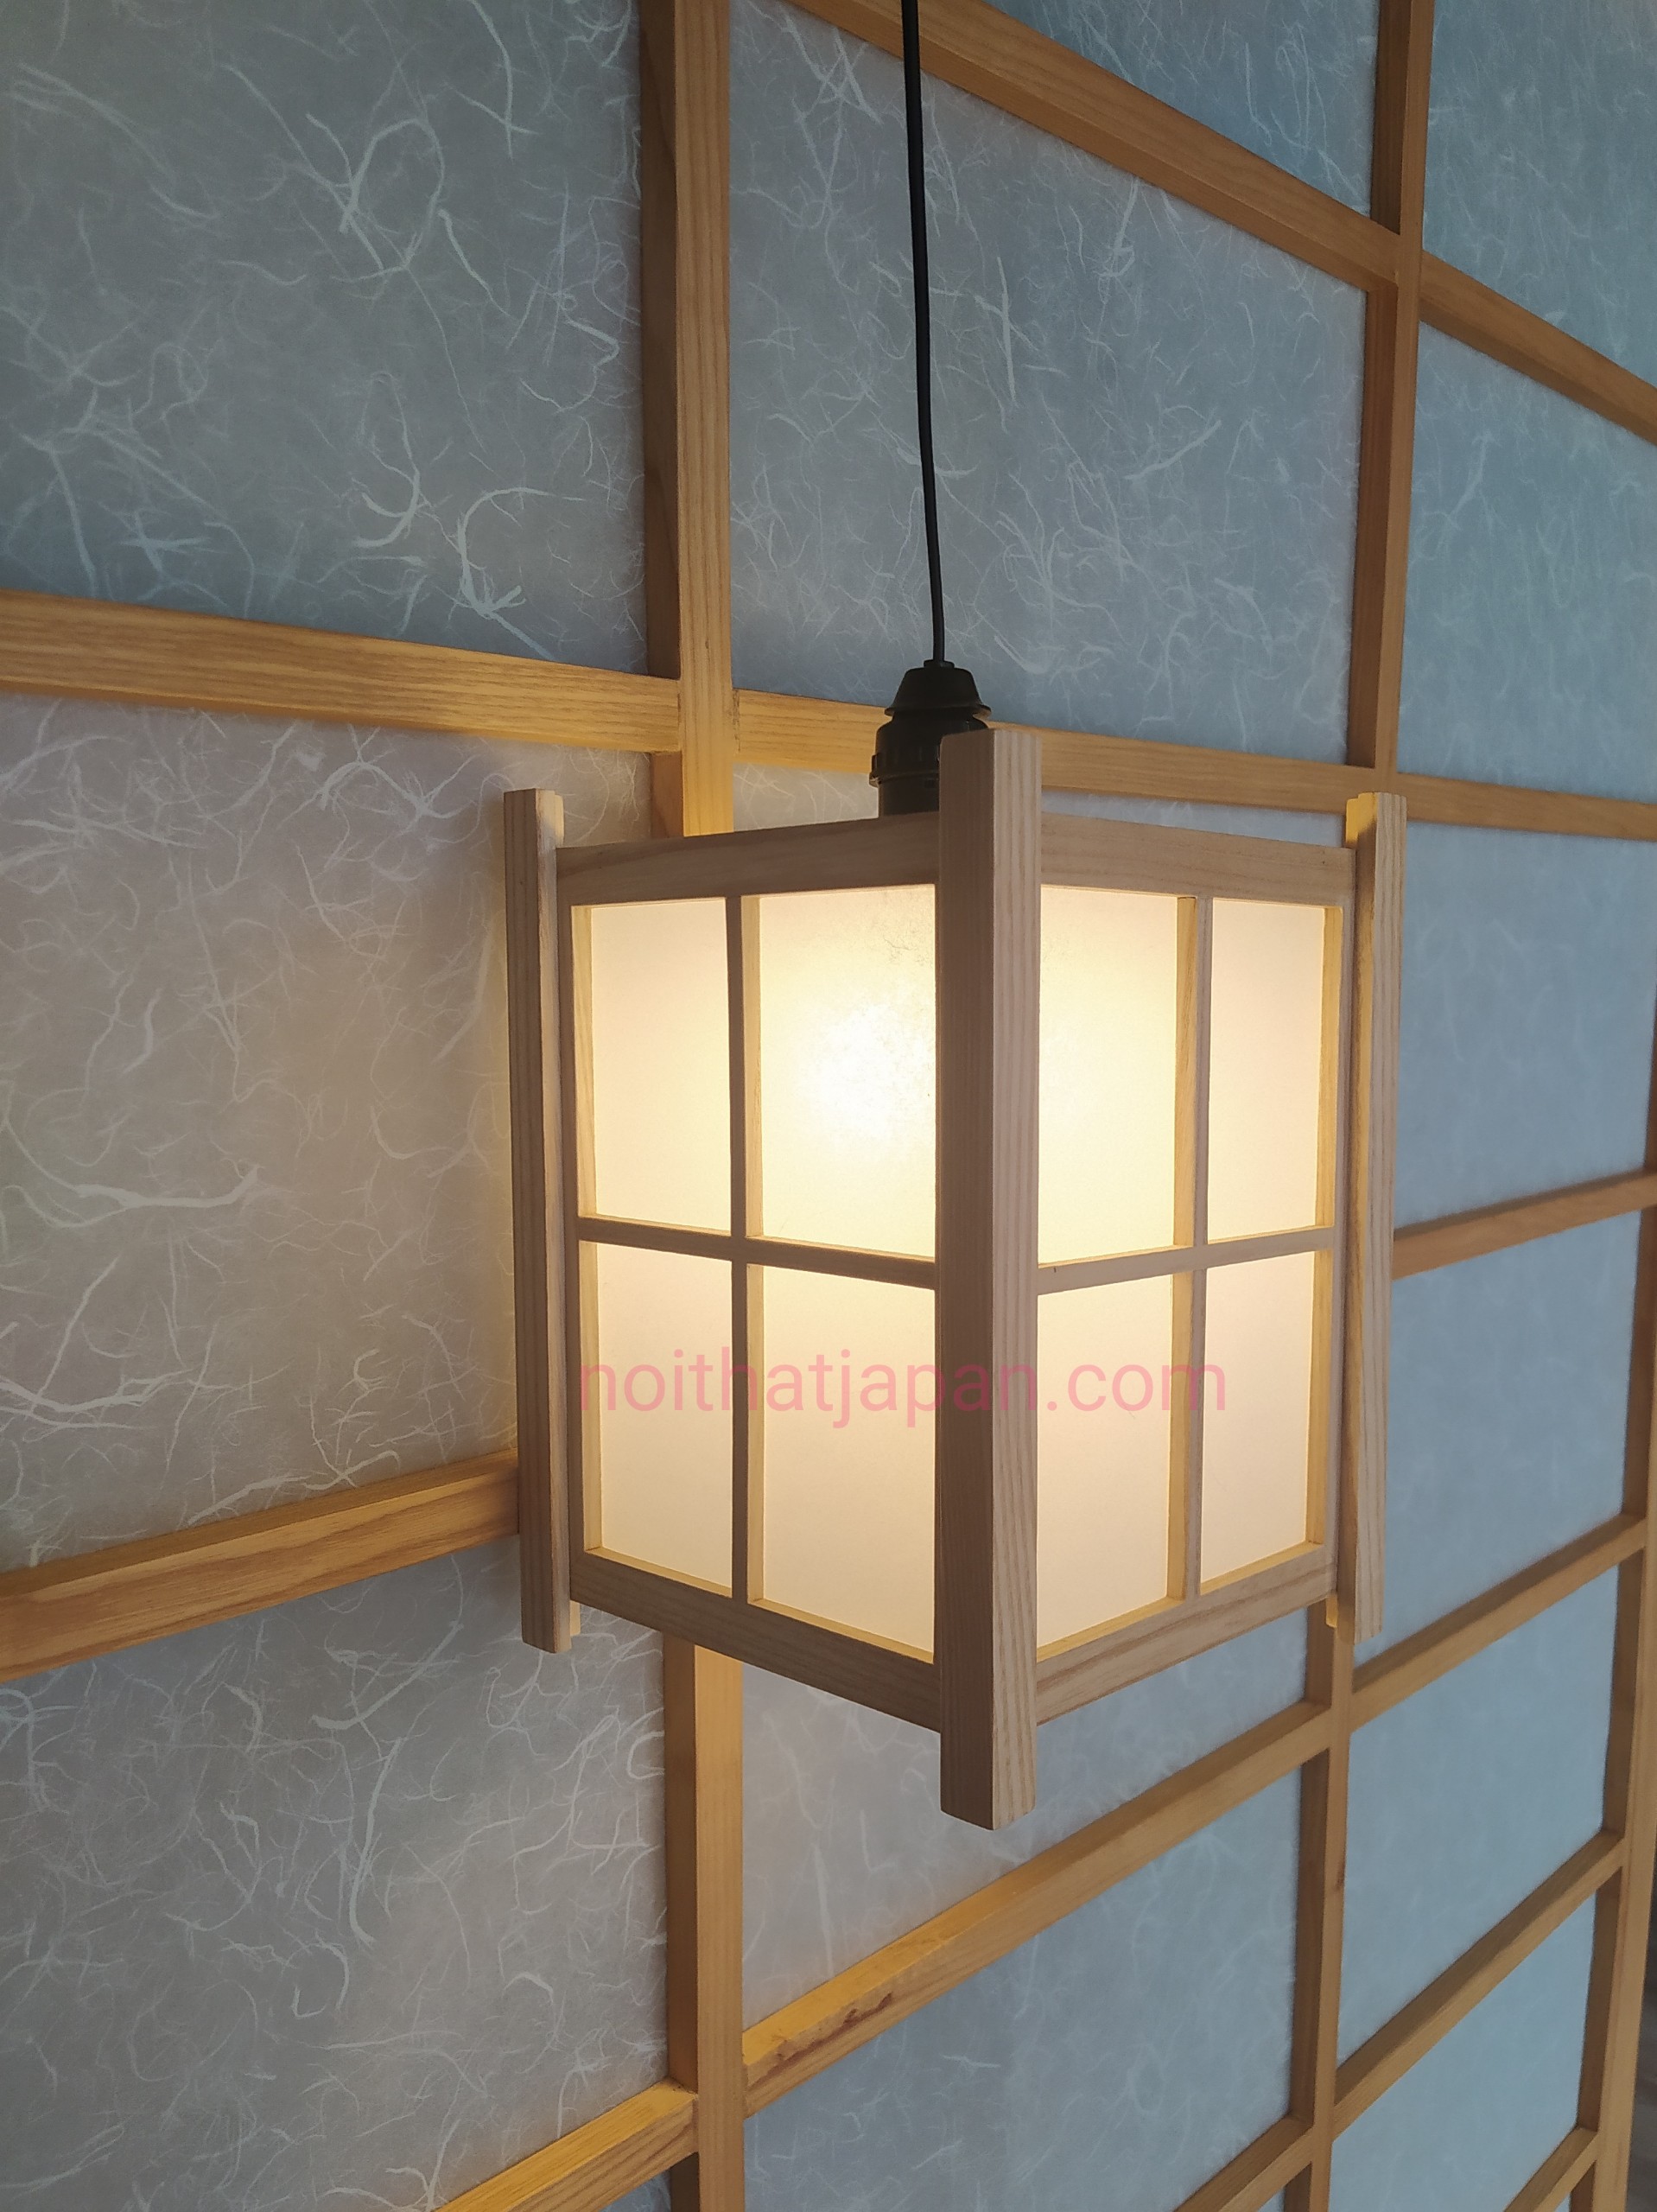 Đèn gỗ thả trần, đèn thả bàn ăn gỗ tự nhiên, đèn decor phòng thiền, phòng trà đạo phong cách truyền thống Nhật Bản, chất liệu gỗ thông và Shoji nhập khẩu Nhật Bản, kích thước 18*18*24cm, gồm bóng lesd ánh sáng vàng